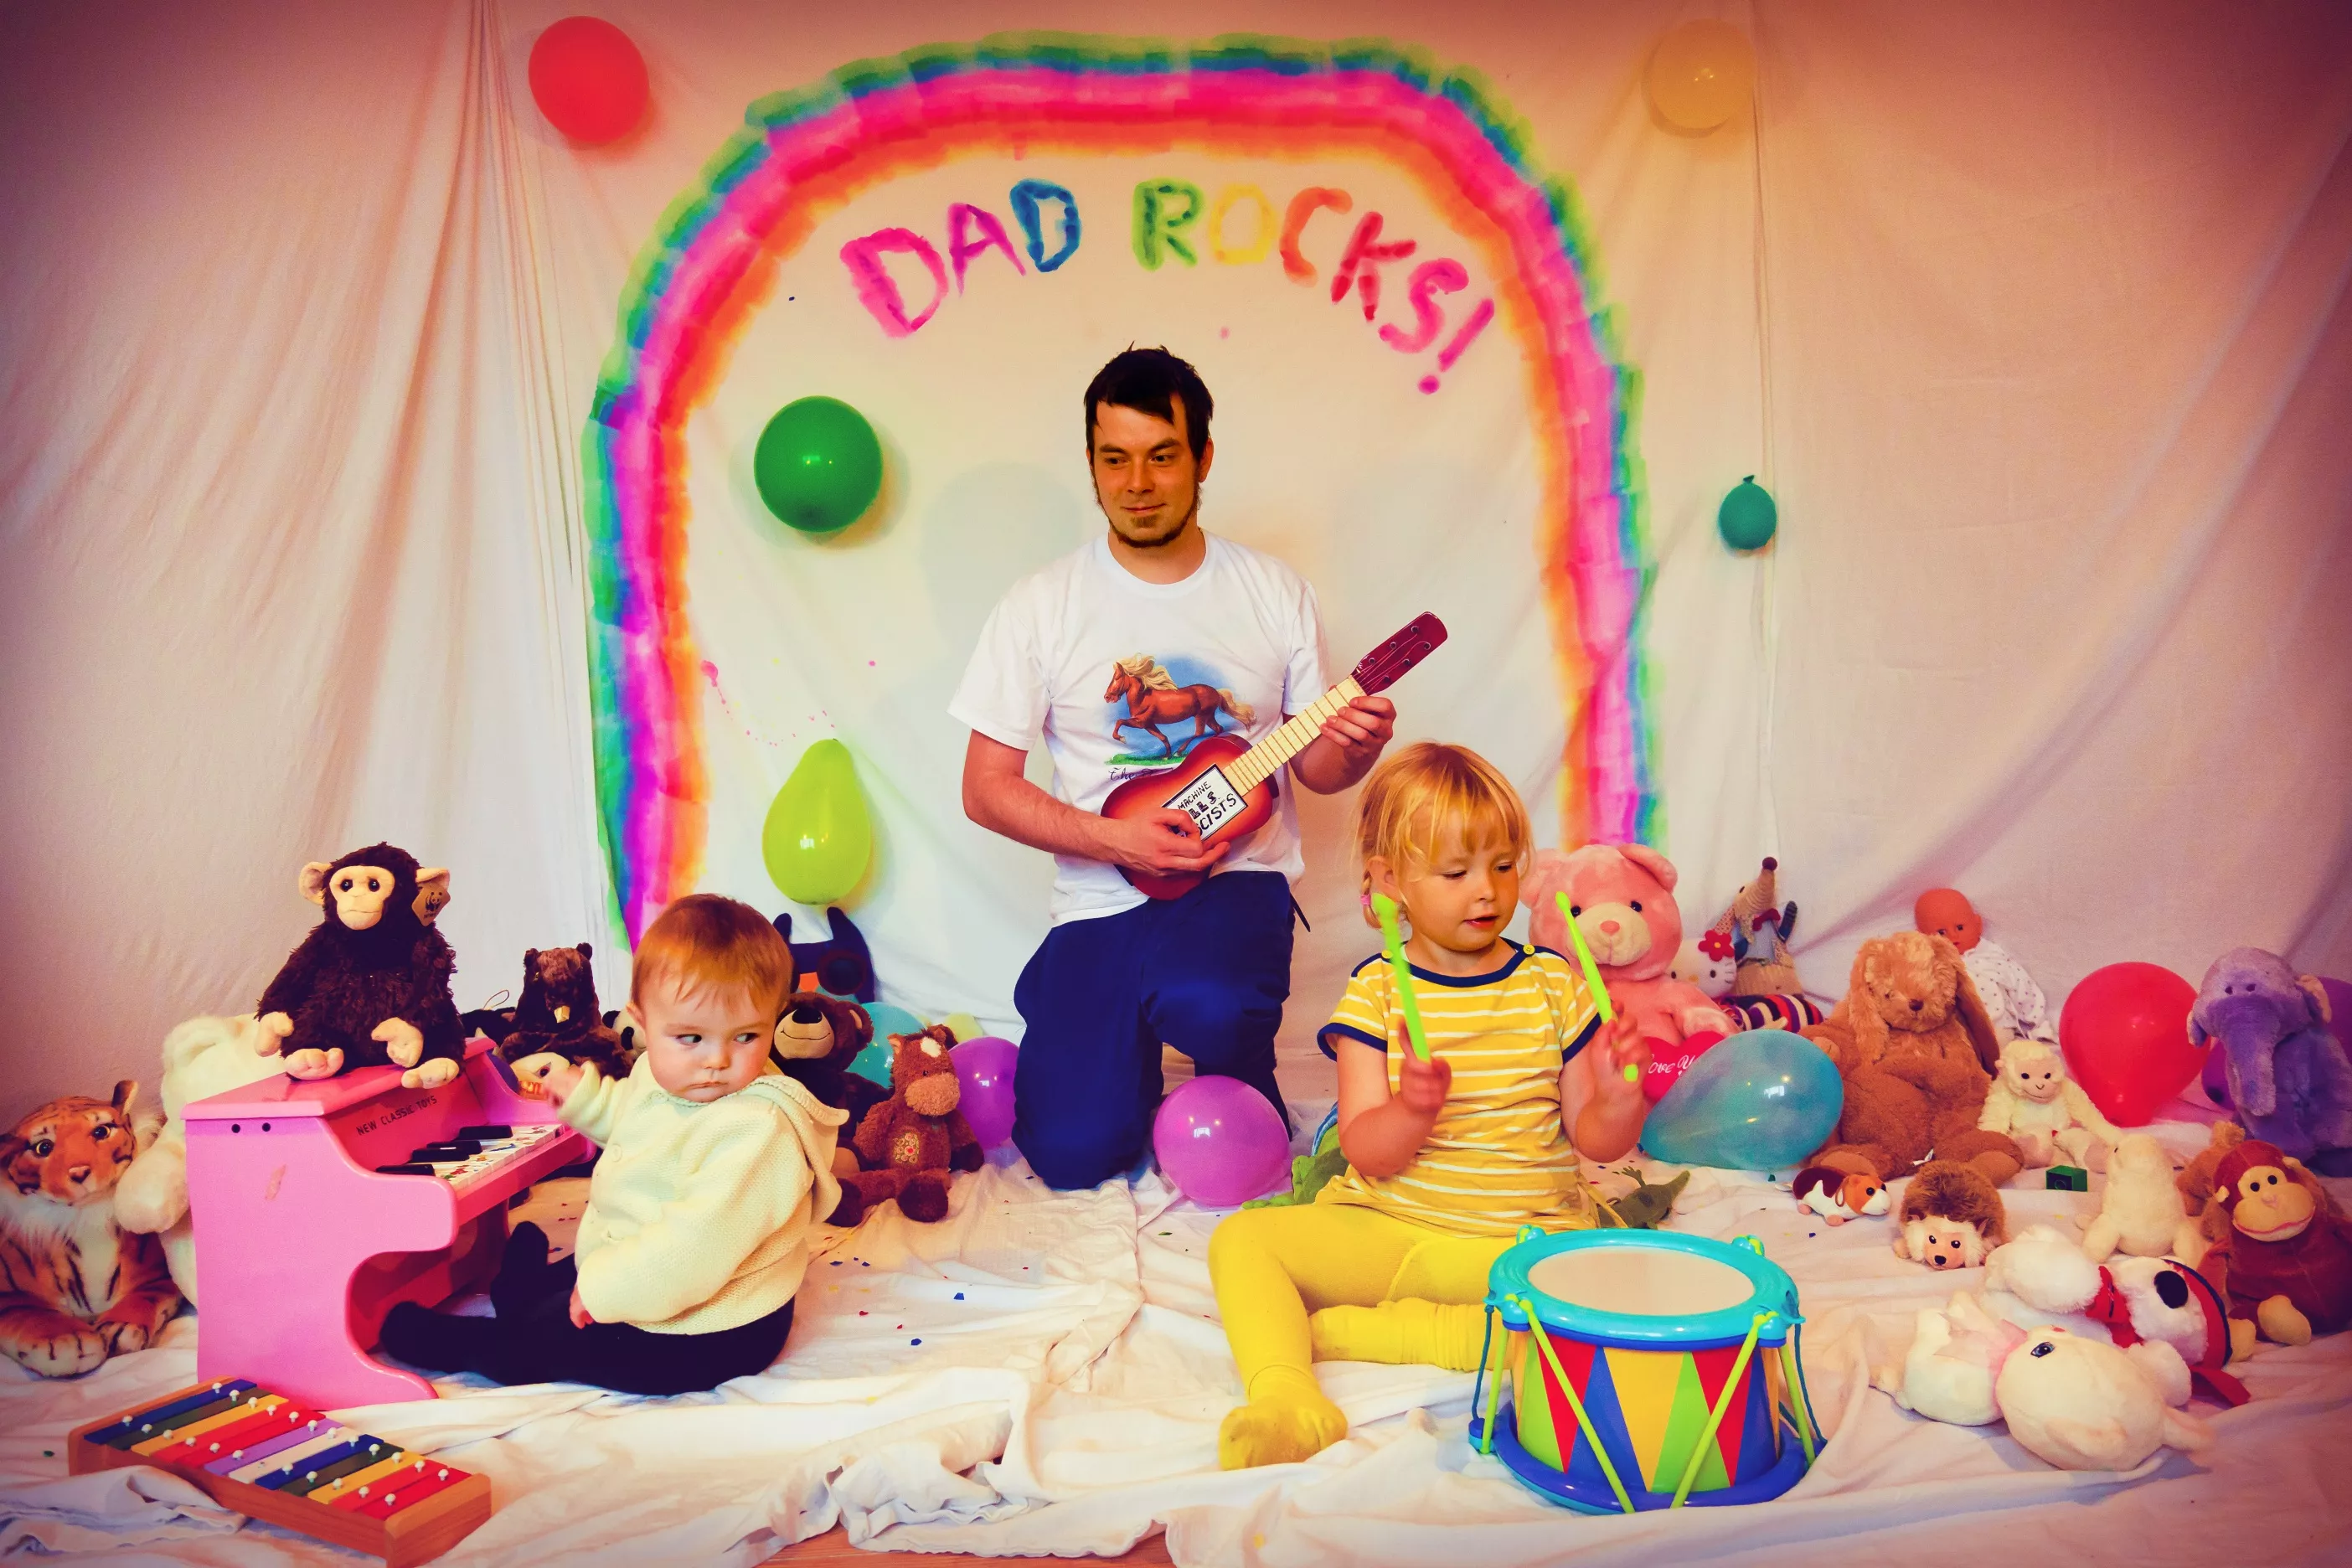 Dad Rocks! udgiver debutalbum 